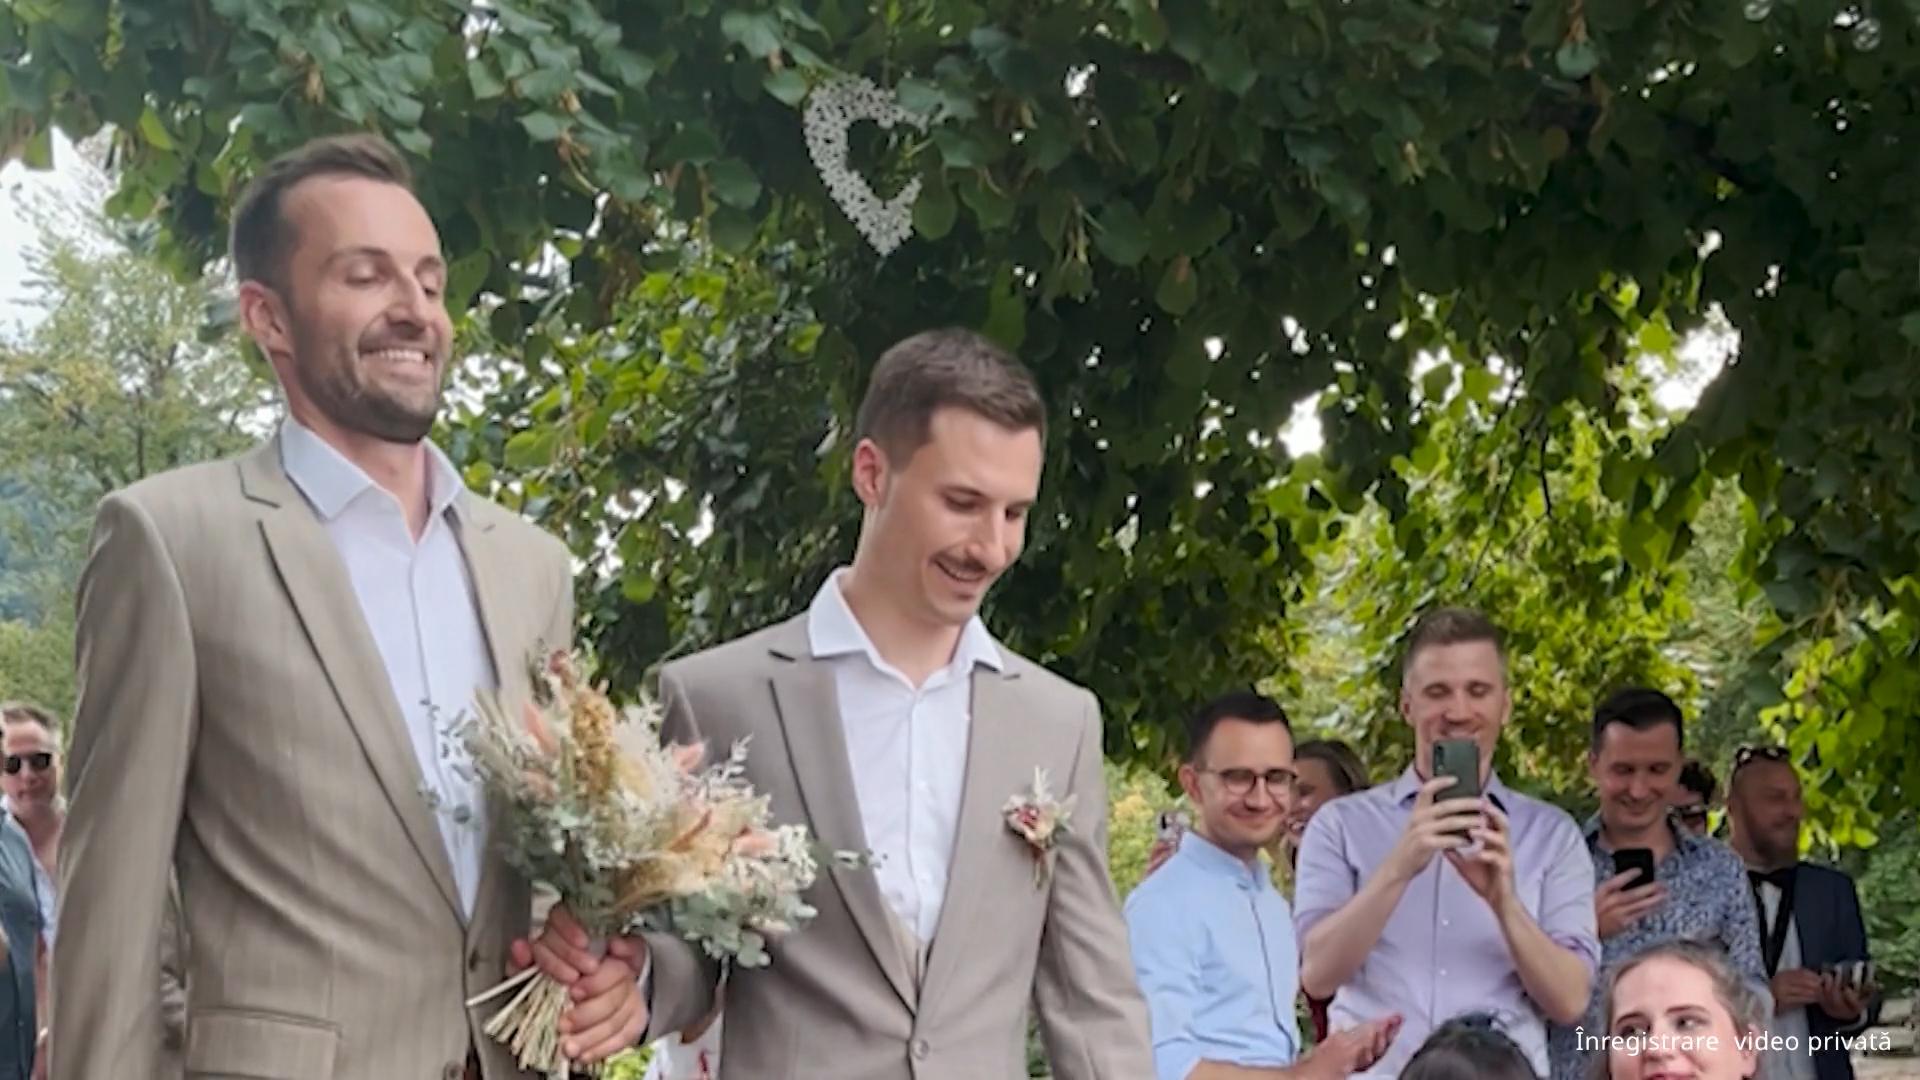 Slovenia - căsătoria pentru persoane de același sex